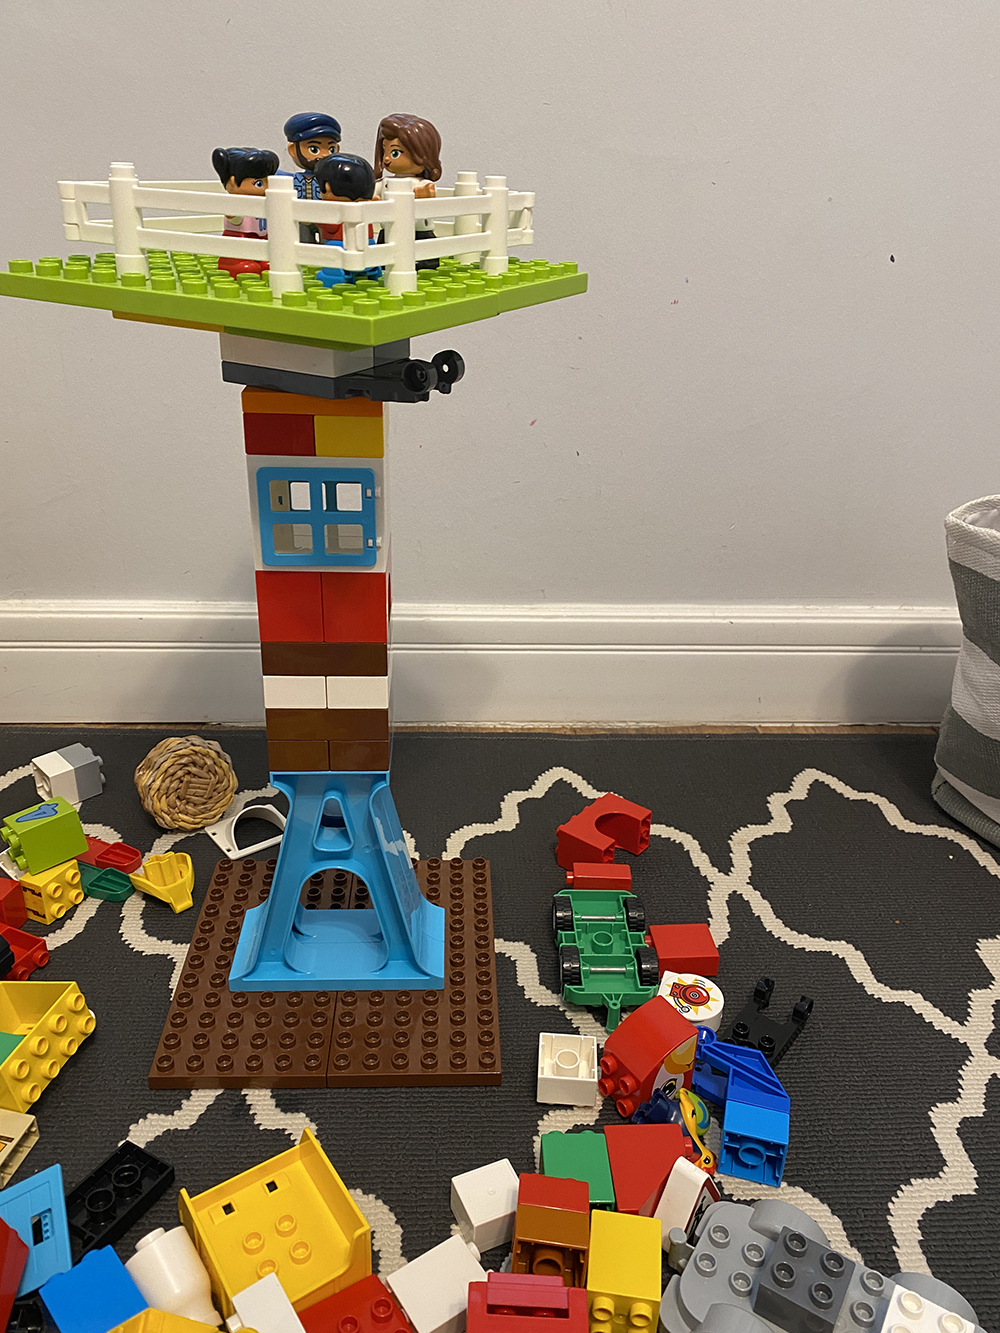 Построили из Lego Duplo большую башню со смотровой площадкой, а потом я додумался поворотную деталь смазать силиконовой смазкой — теперь площадка крутится еще лучше